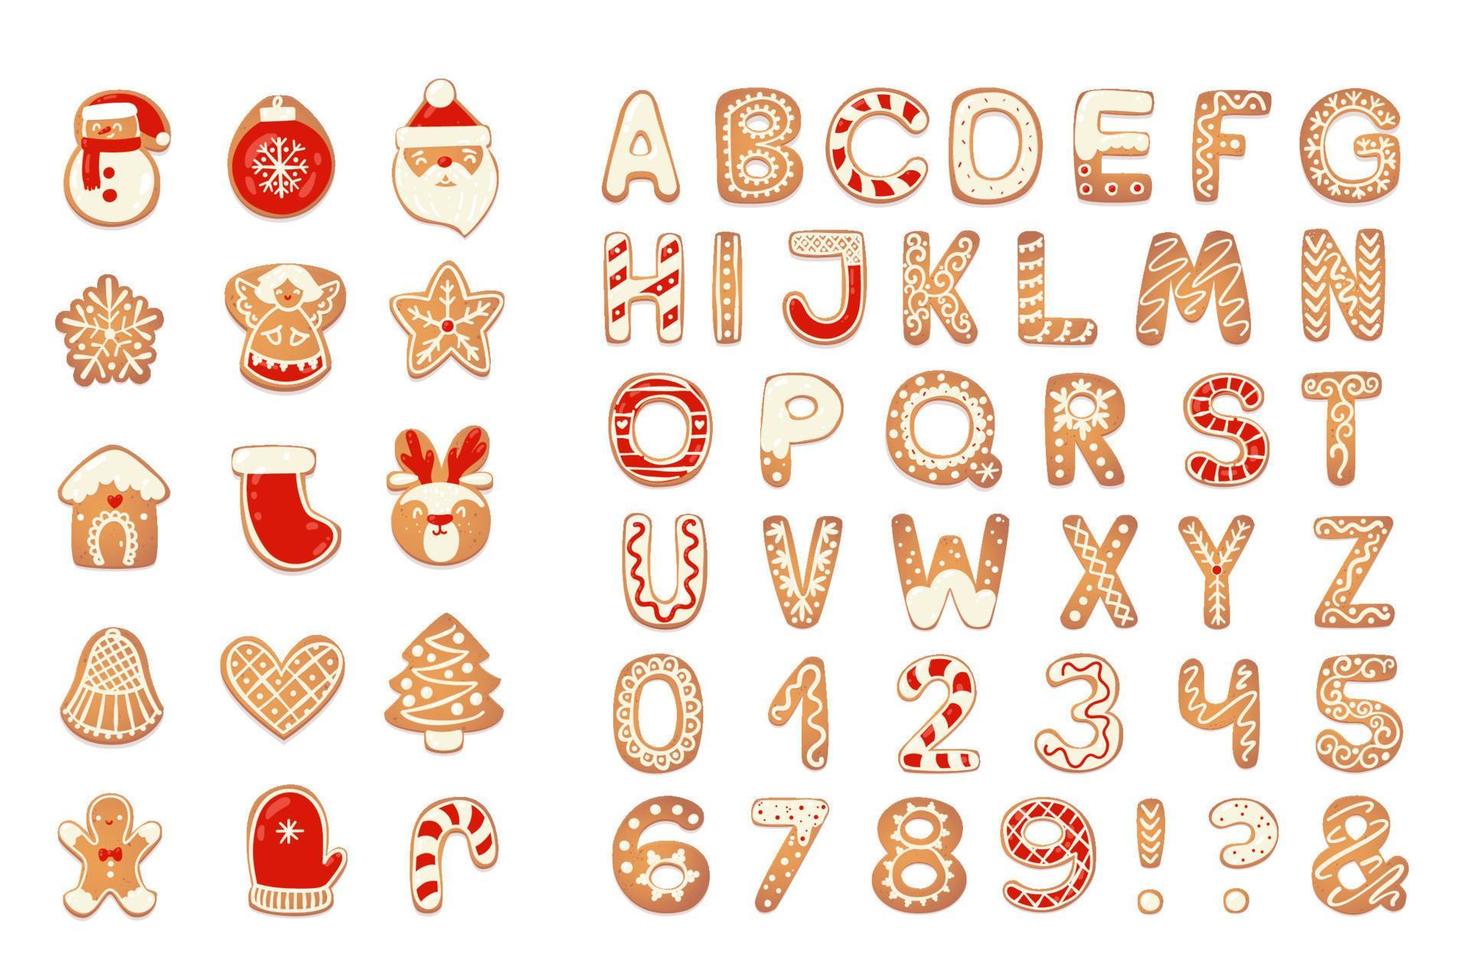 jul pepparkaka småkakor alfabet med siffror. kex brev, tecken för jul meddelanden och design. vektor illustration med dekorationer.